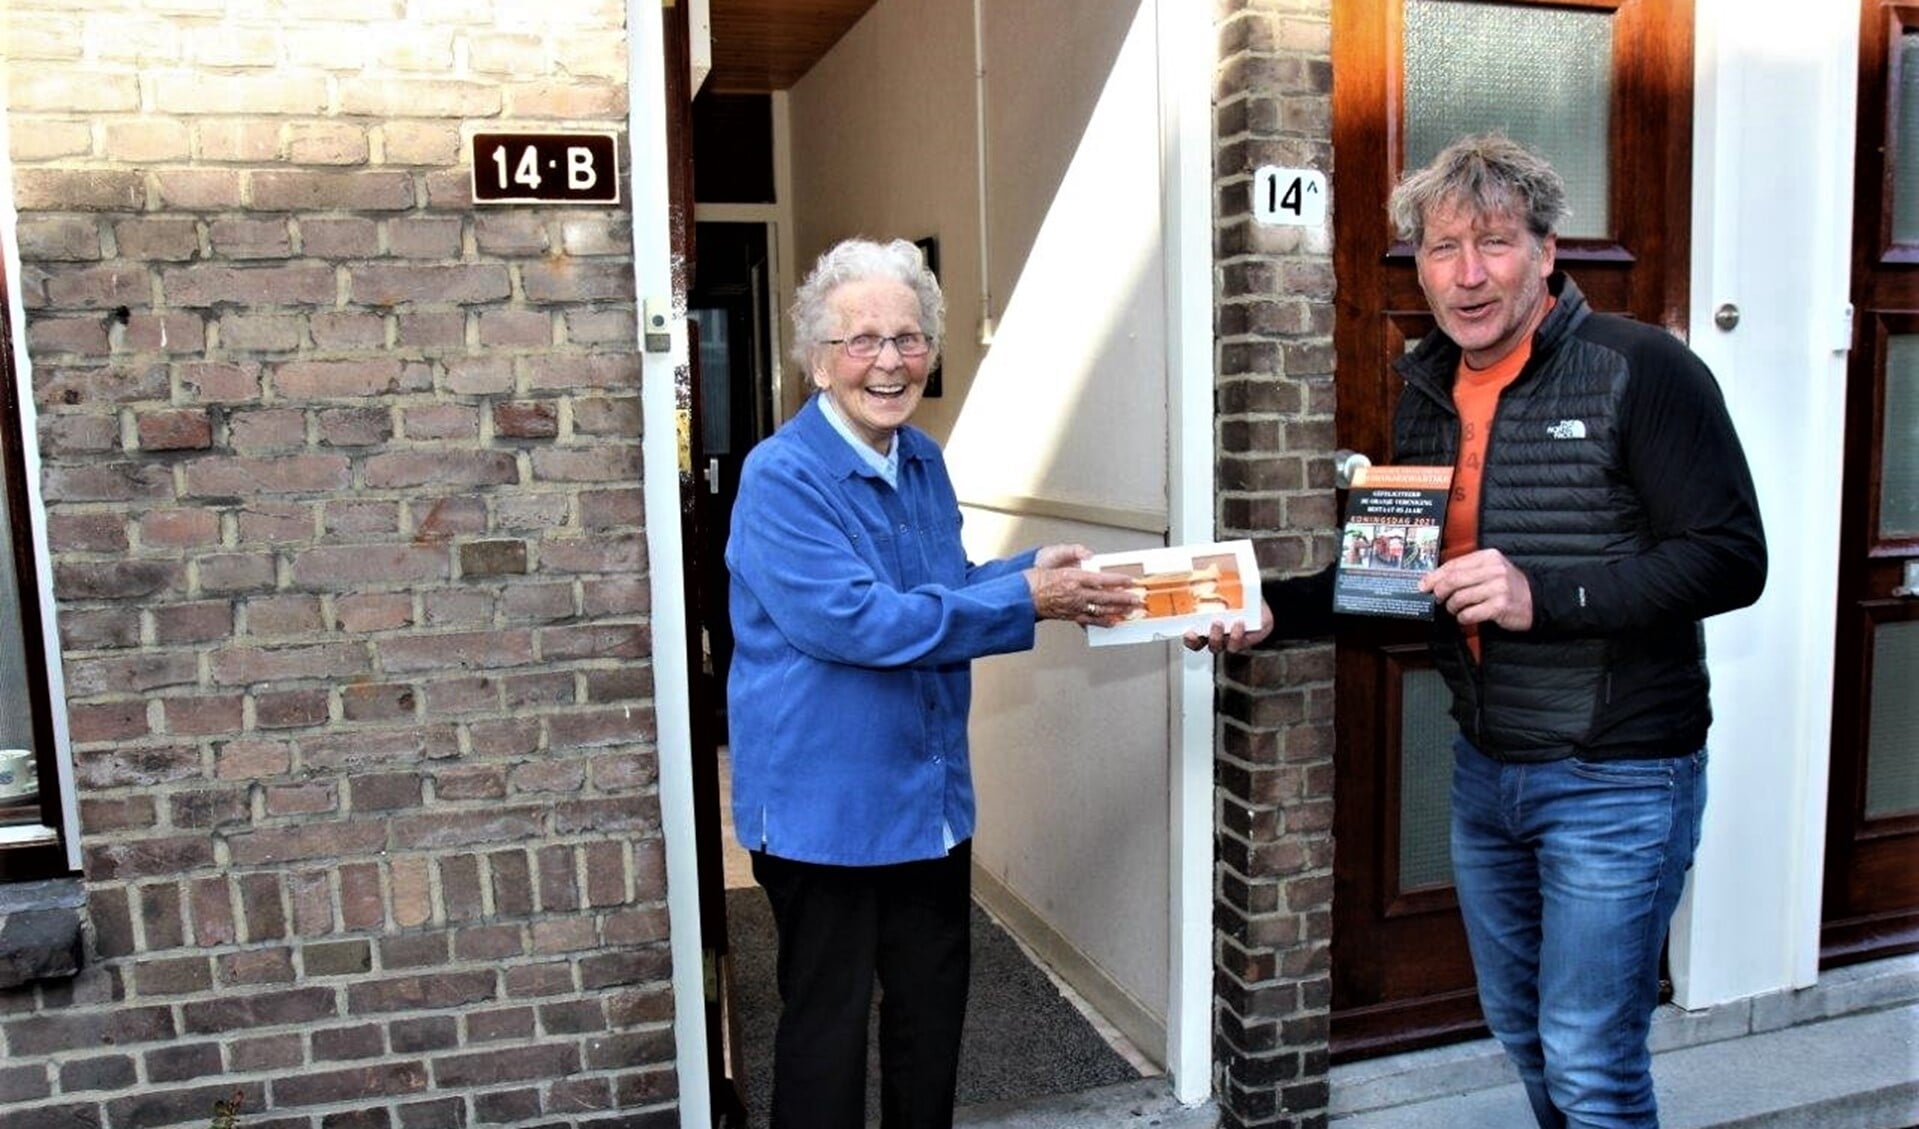 Voorzitter Erik van der Linden overhandigt aan mevr. Zaat, één van de oudste leden van de vereniging, een doos met oranjetompoezen (foto Ap de Heus)